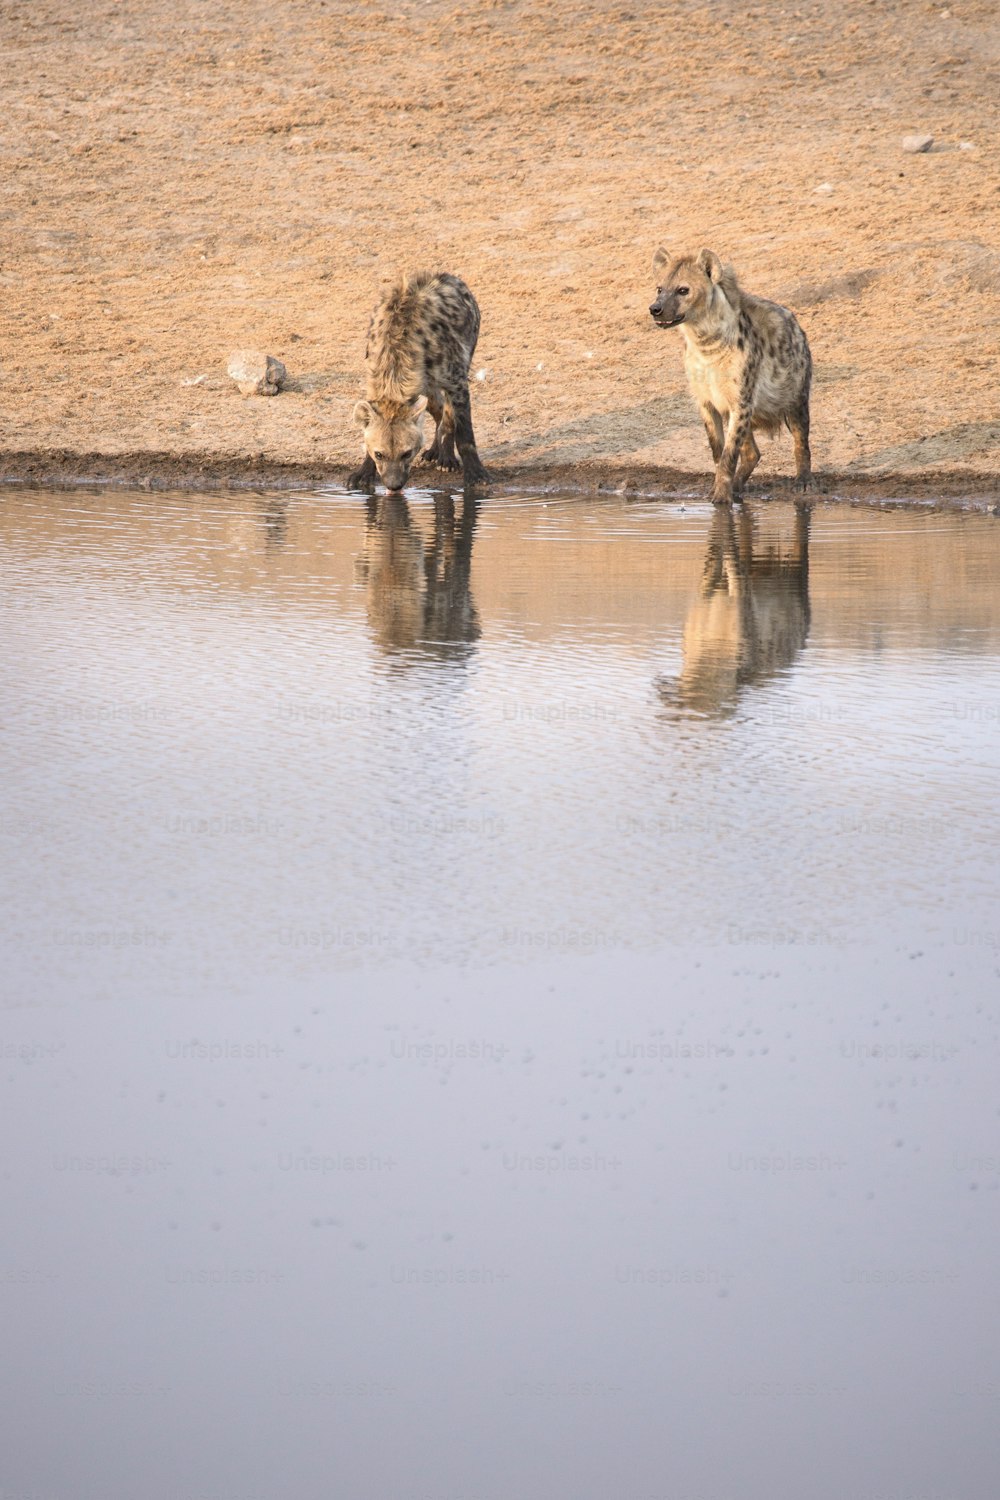 Hyenas drinking